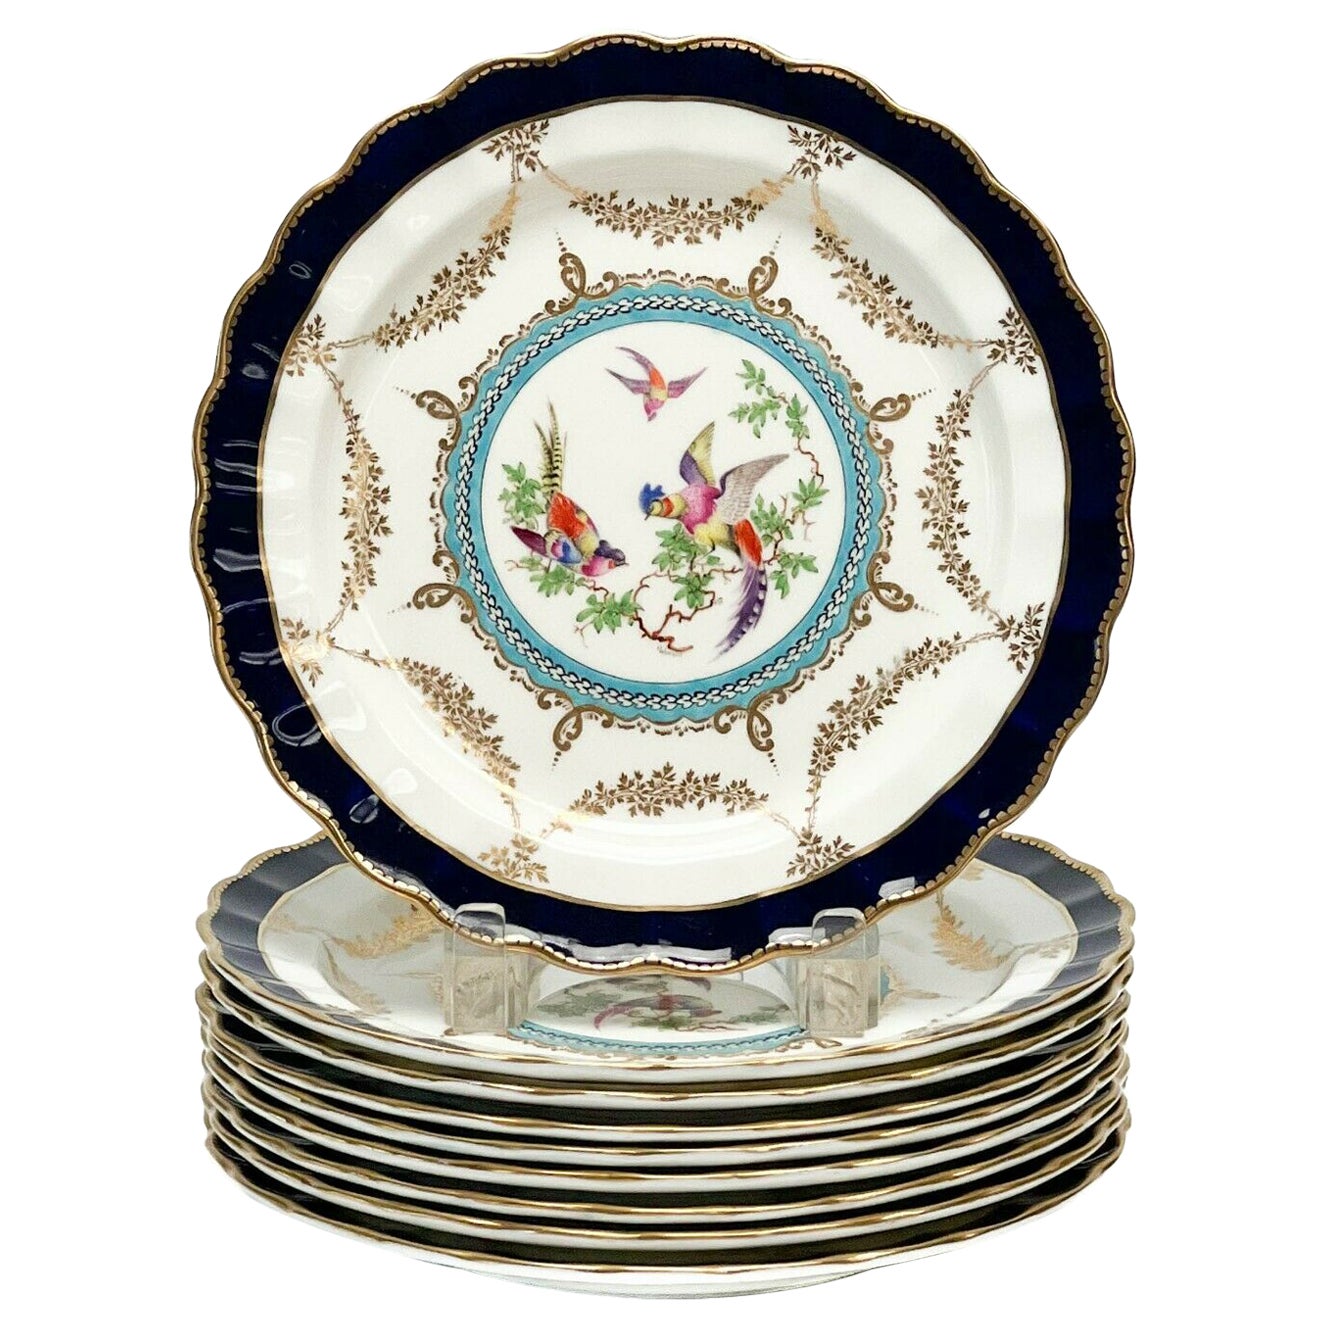 9 Royal Worcester for Tiffany & Co. Porcelain Dessert Plates Artist Signed, 1925